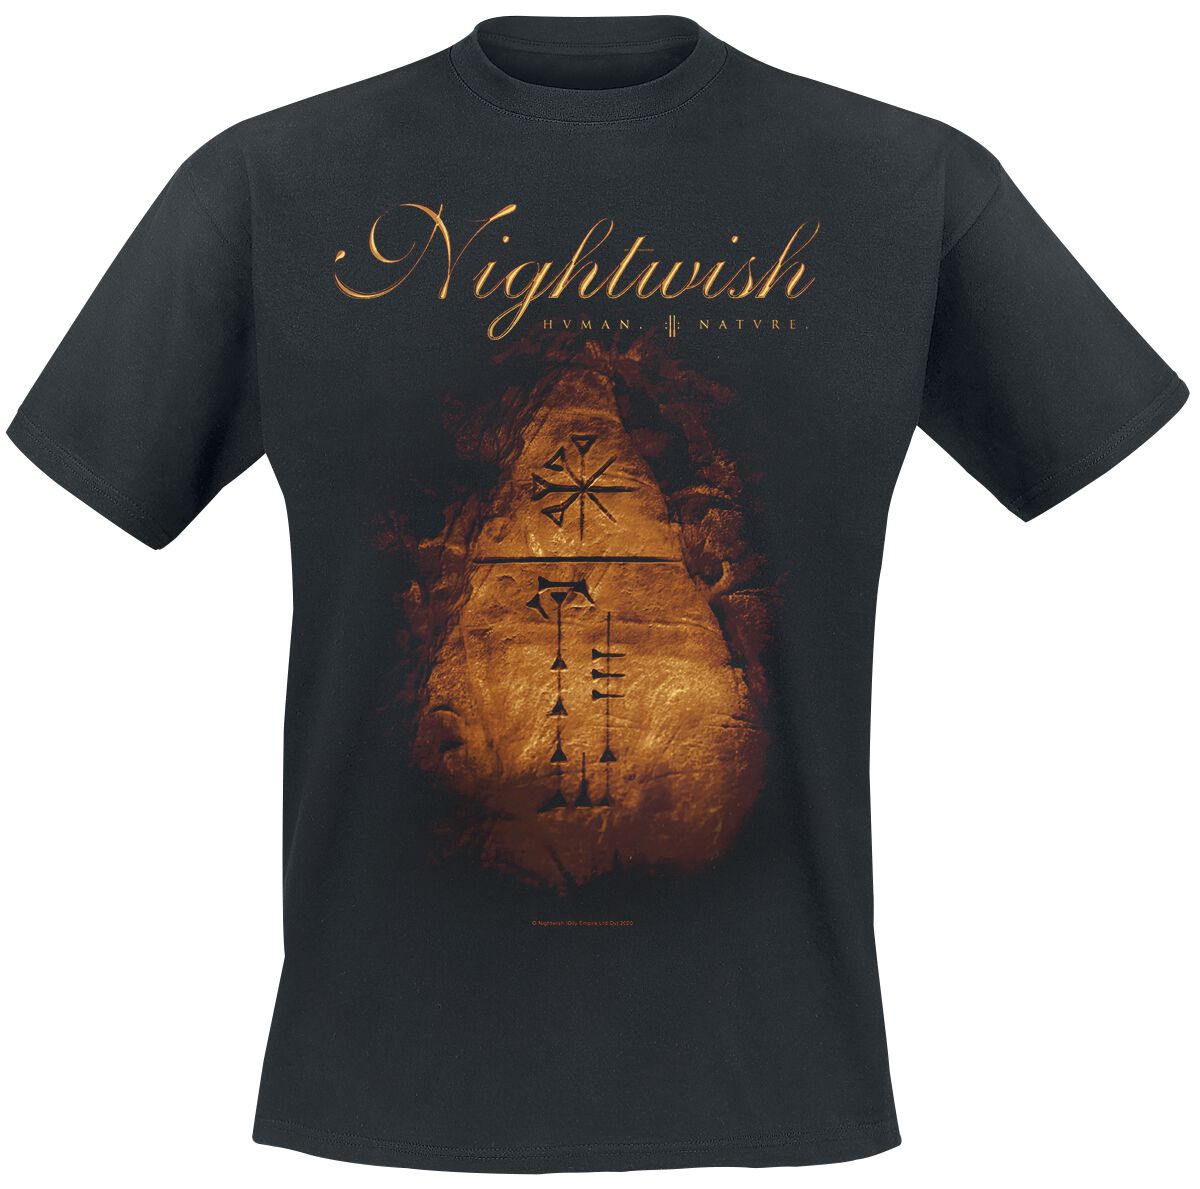 Nightwish T-Shirt - Human. :||: Nature. - S bis XXL - für Männer - Größe M - schwarz  - EMP exklusives Merchandise!